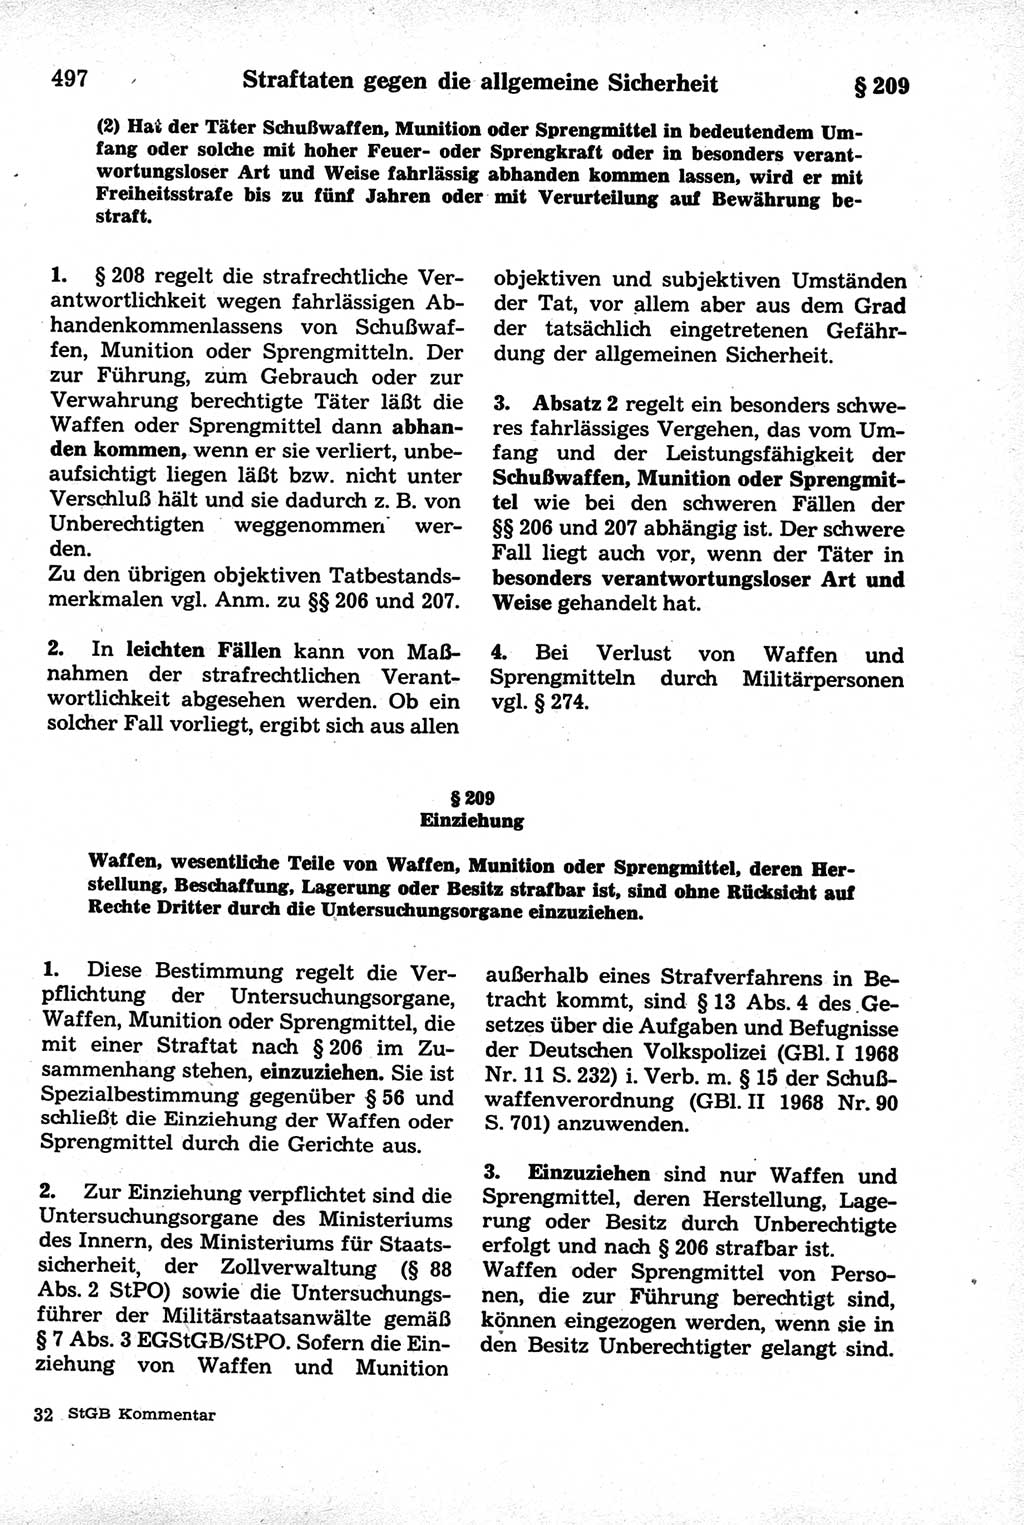 Strafrecht der Deutschen Demokratischen Republik (DDR), Kommentar zum Strafgesetzbuch (StGB) 1981, Seite 497 (Strafr. DDR Komm. StGB 1981, S. 497)